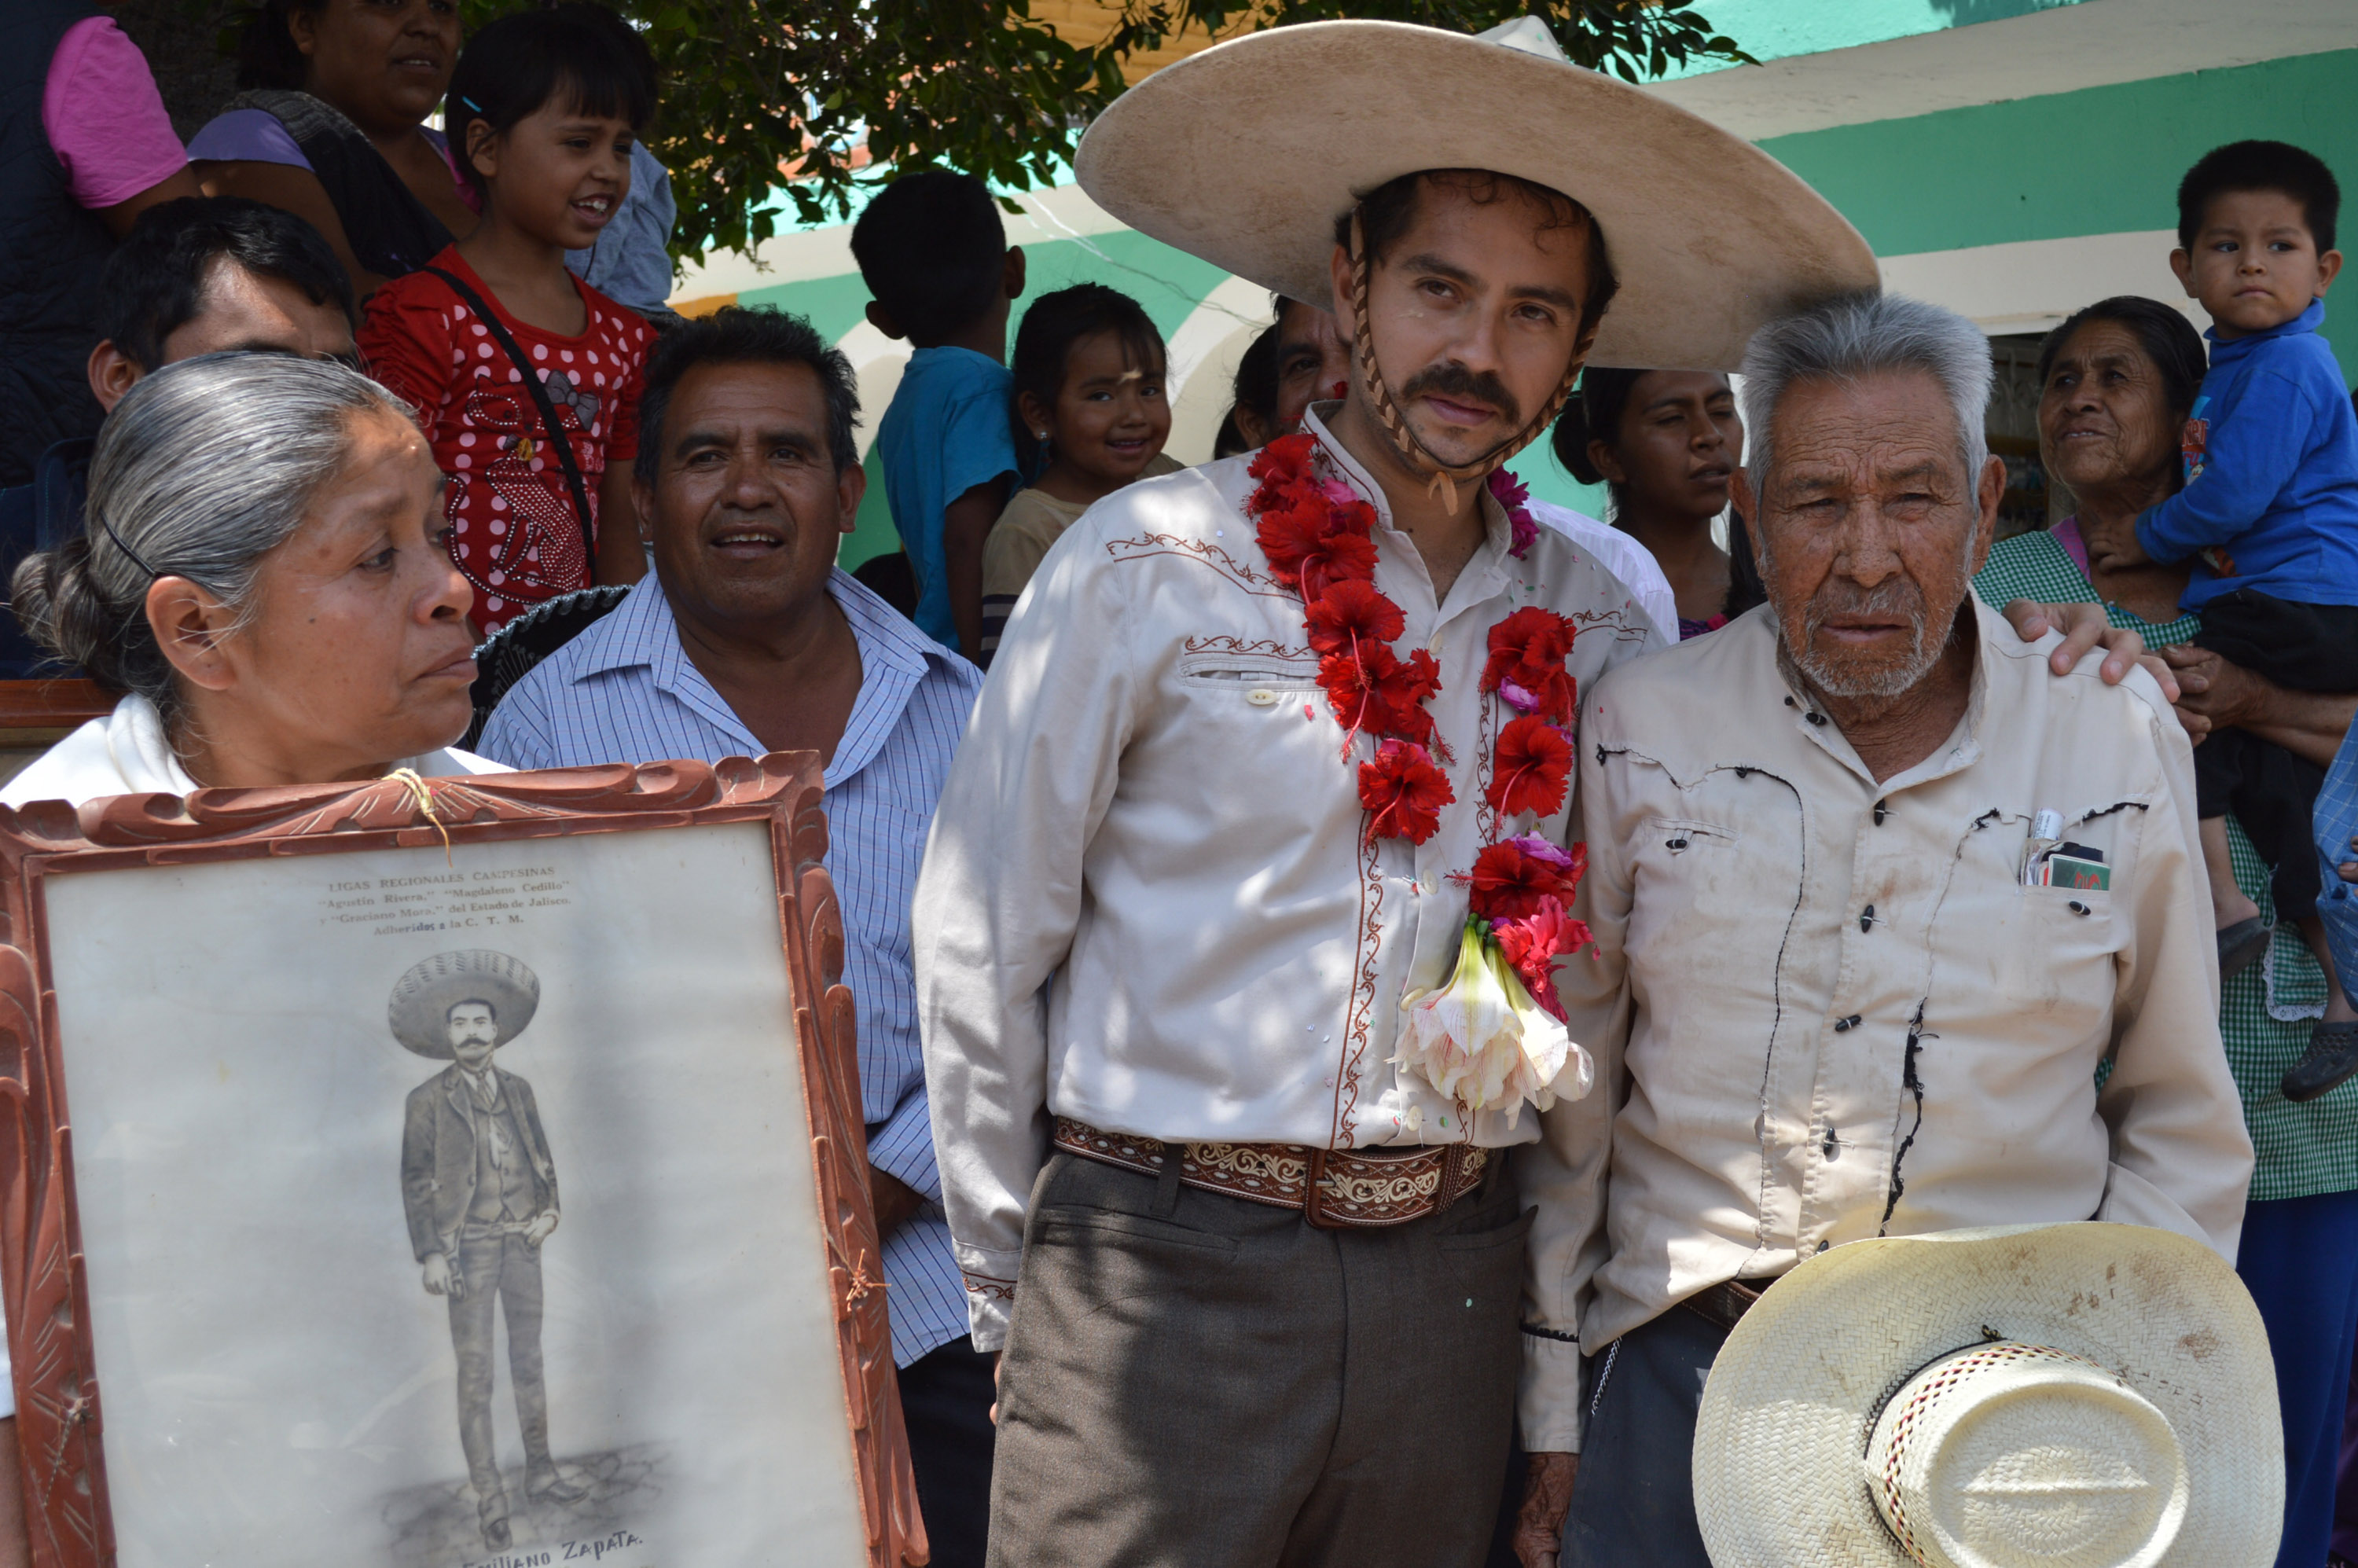 México necesita revolución sin armas: bisnieto de Zapata